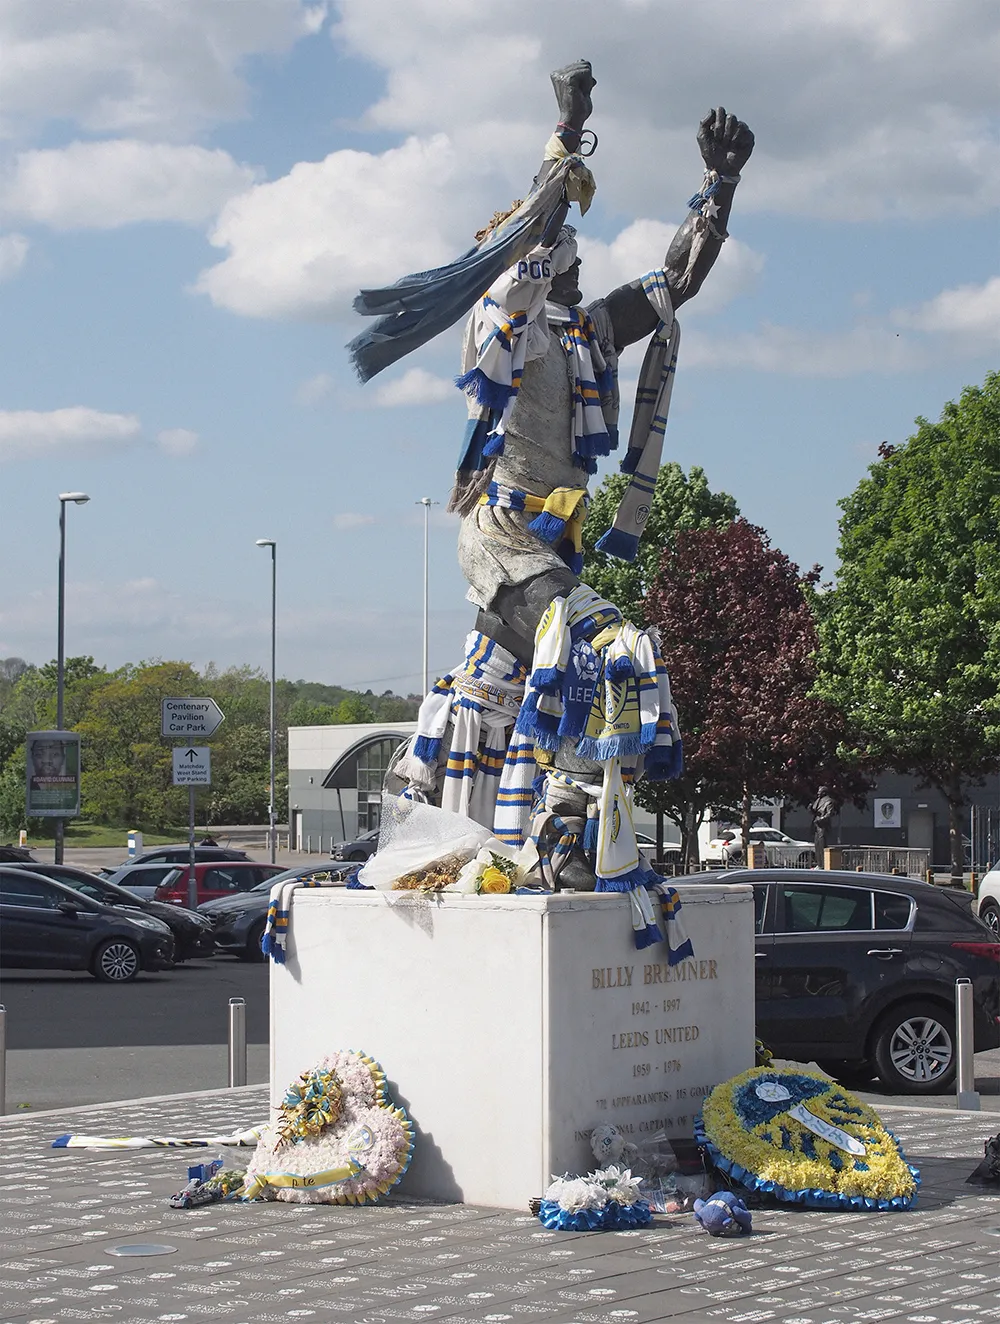 Billy Bremner statue outside Leeds United's ground, Elland Road.